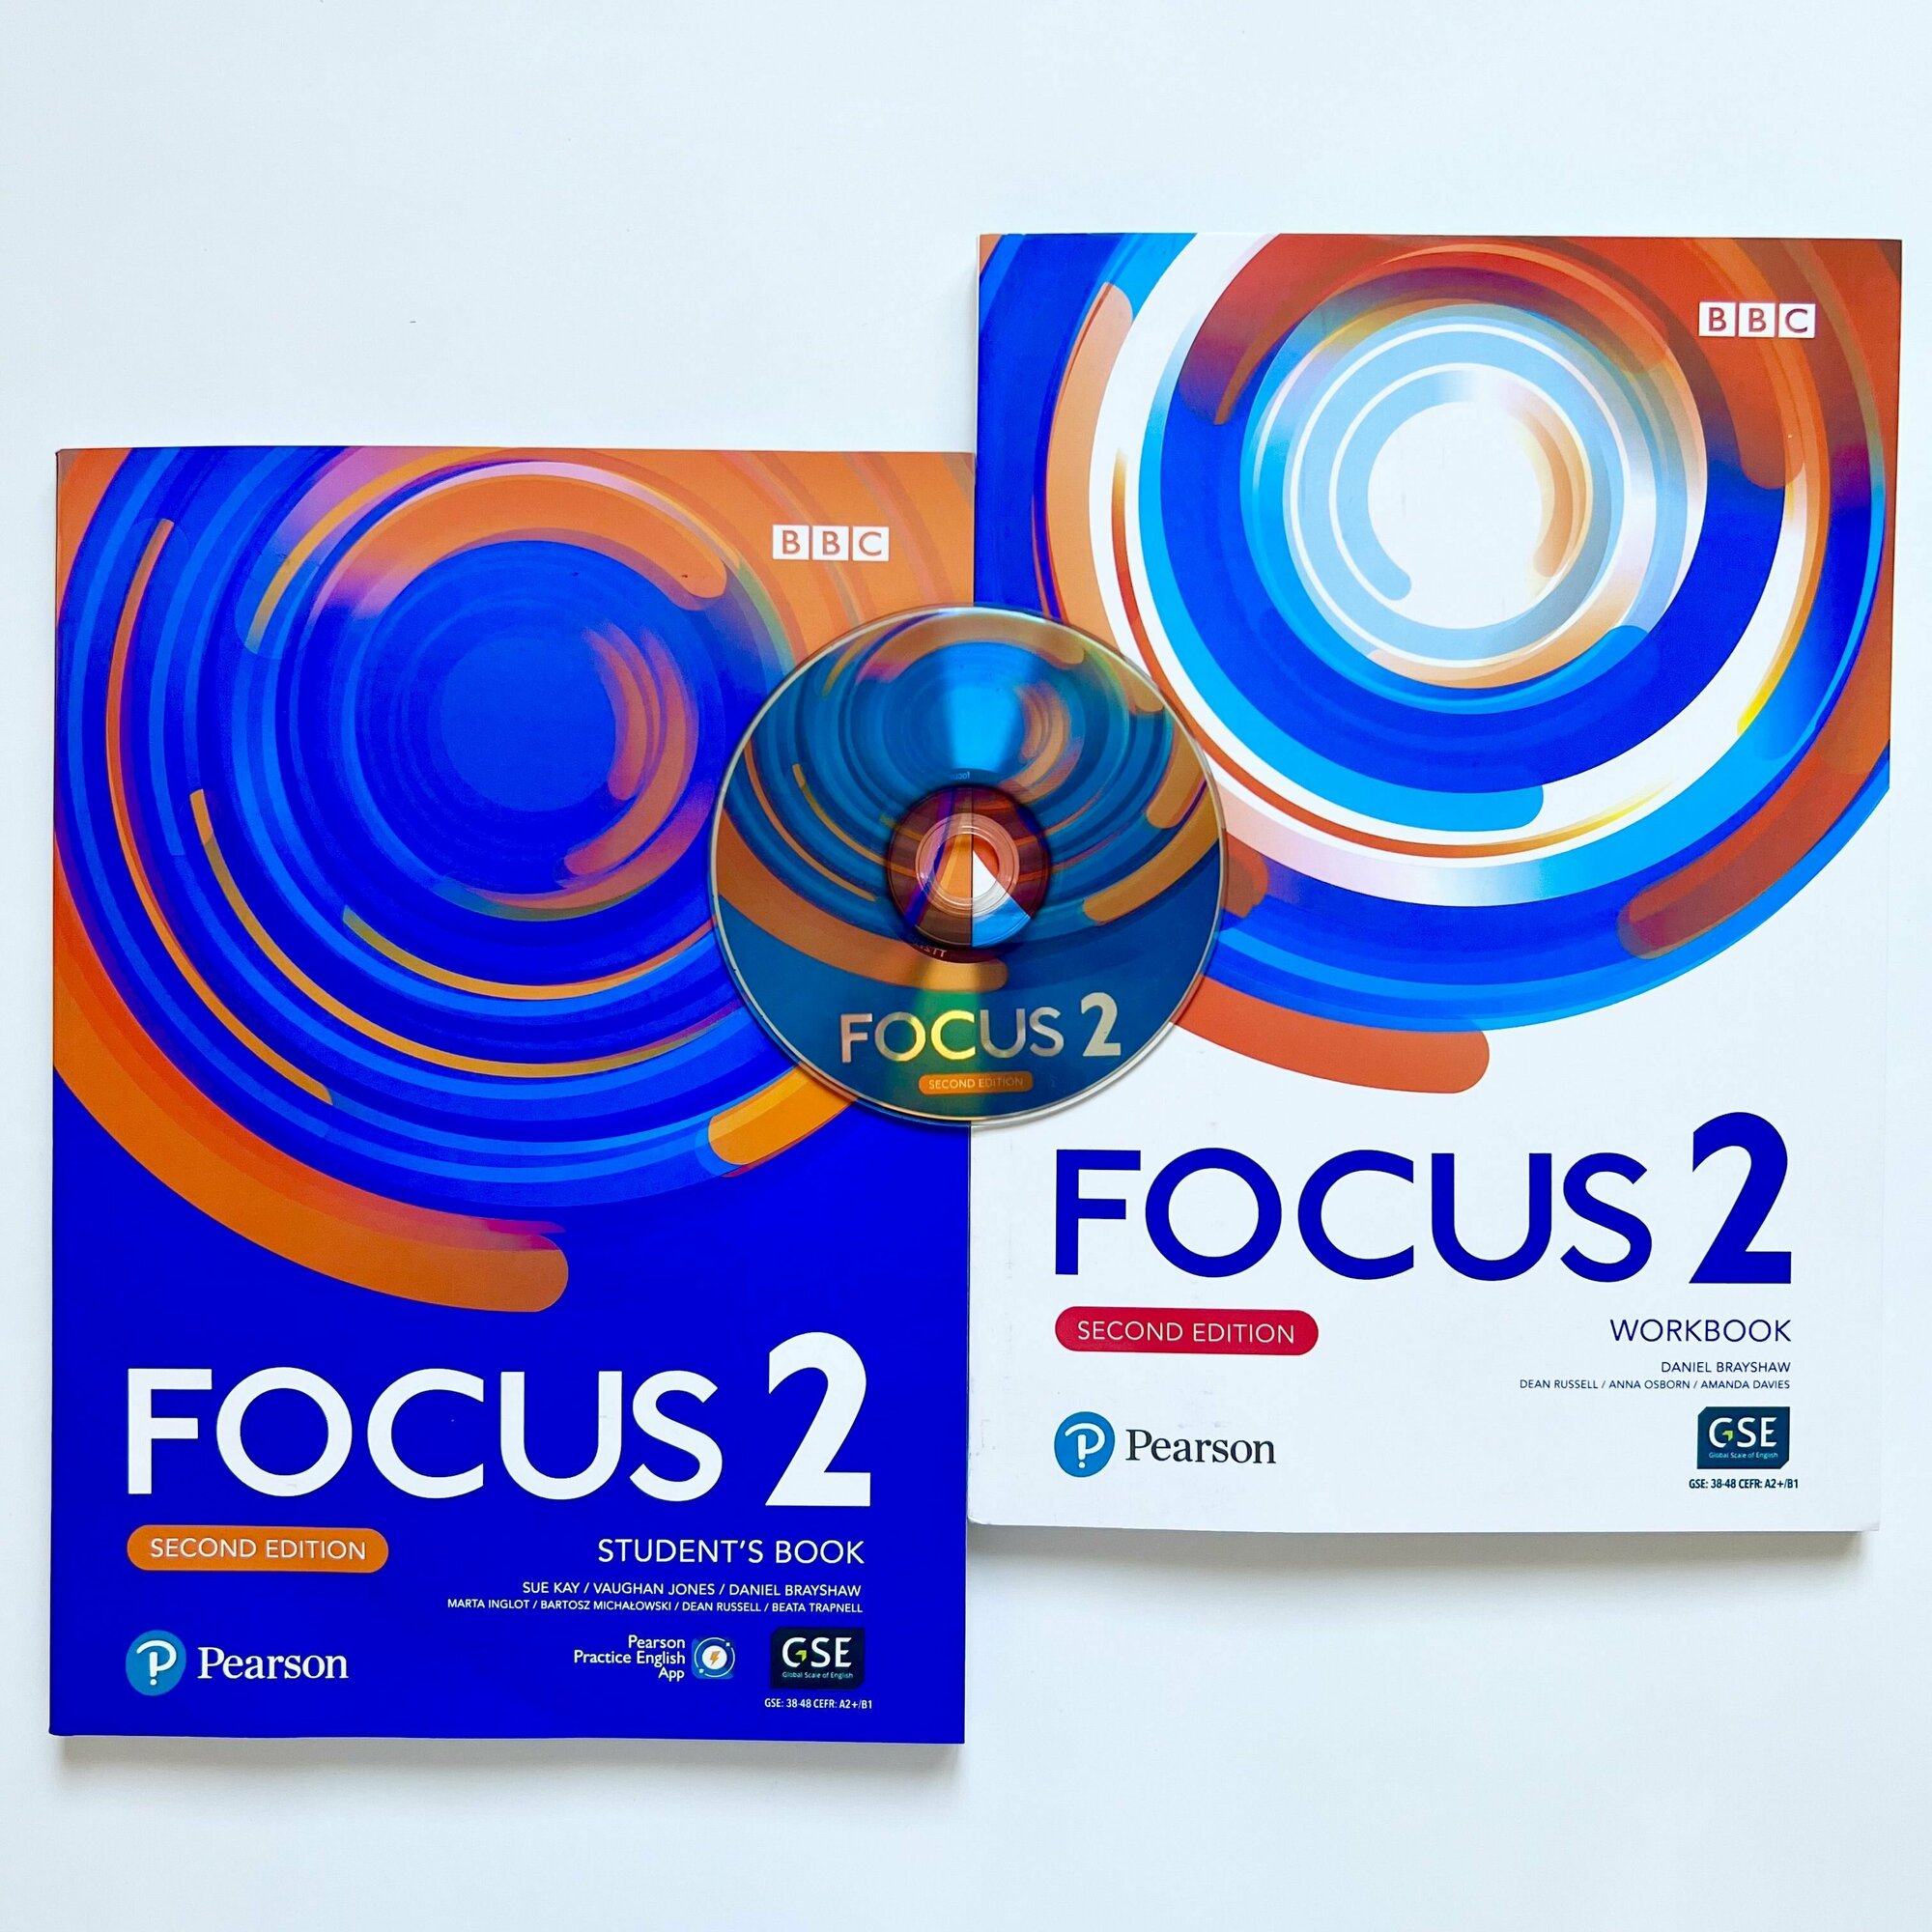 Focus 2 учебник и рабочая тетрадь комплект, Student's Book + Workbook + CD (second edition)